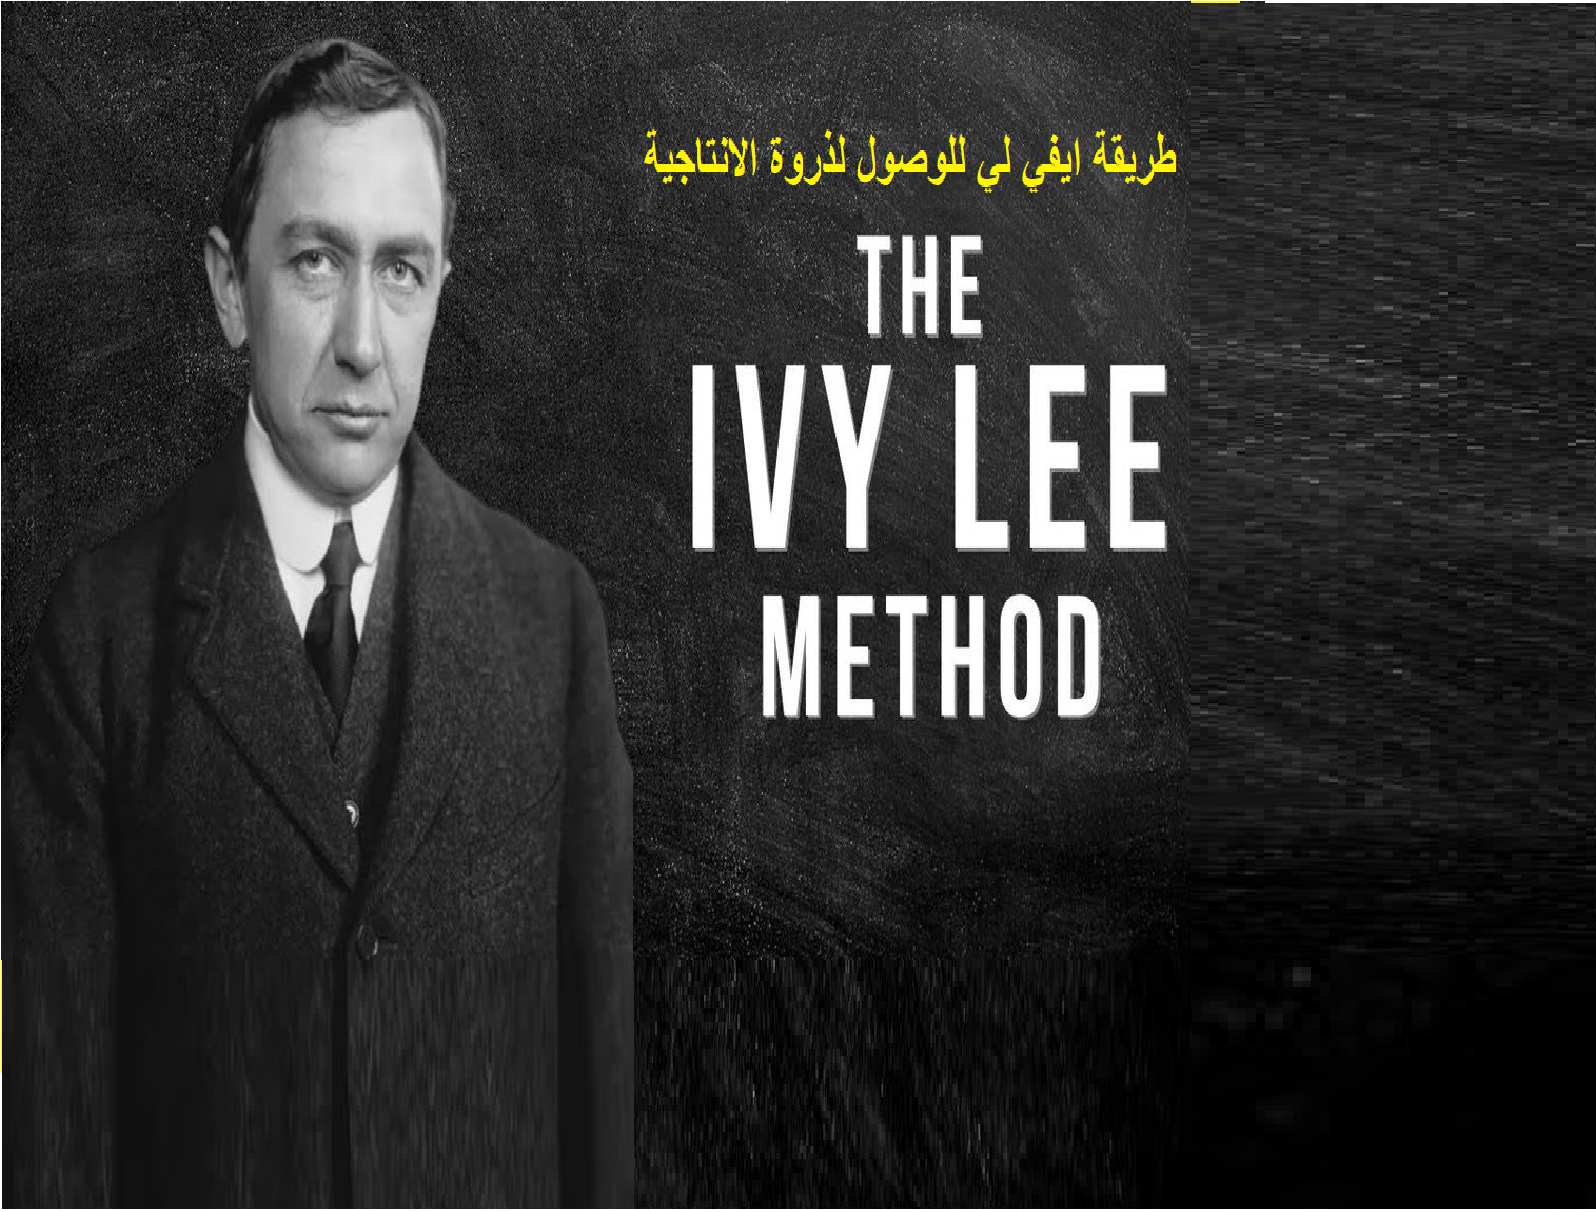 طريقة ايفي لي للوصول لذروة الإنتاجية  The Ivy Lee Method